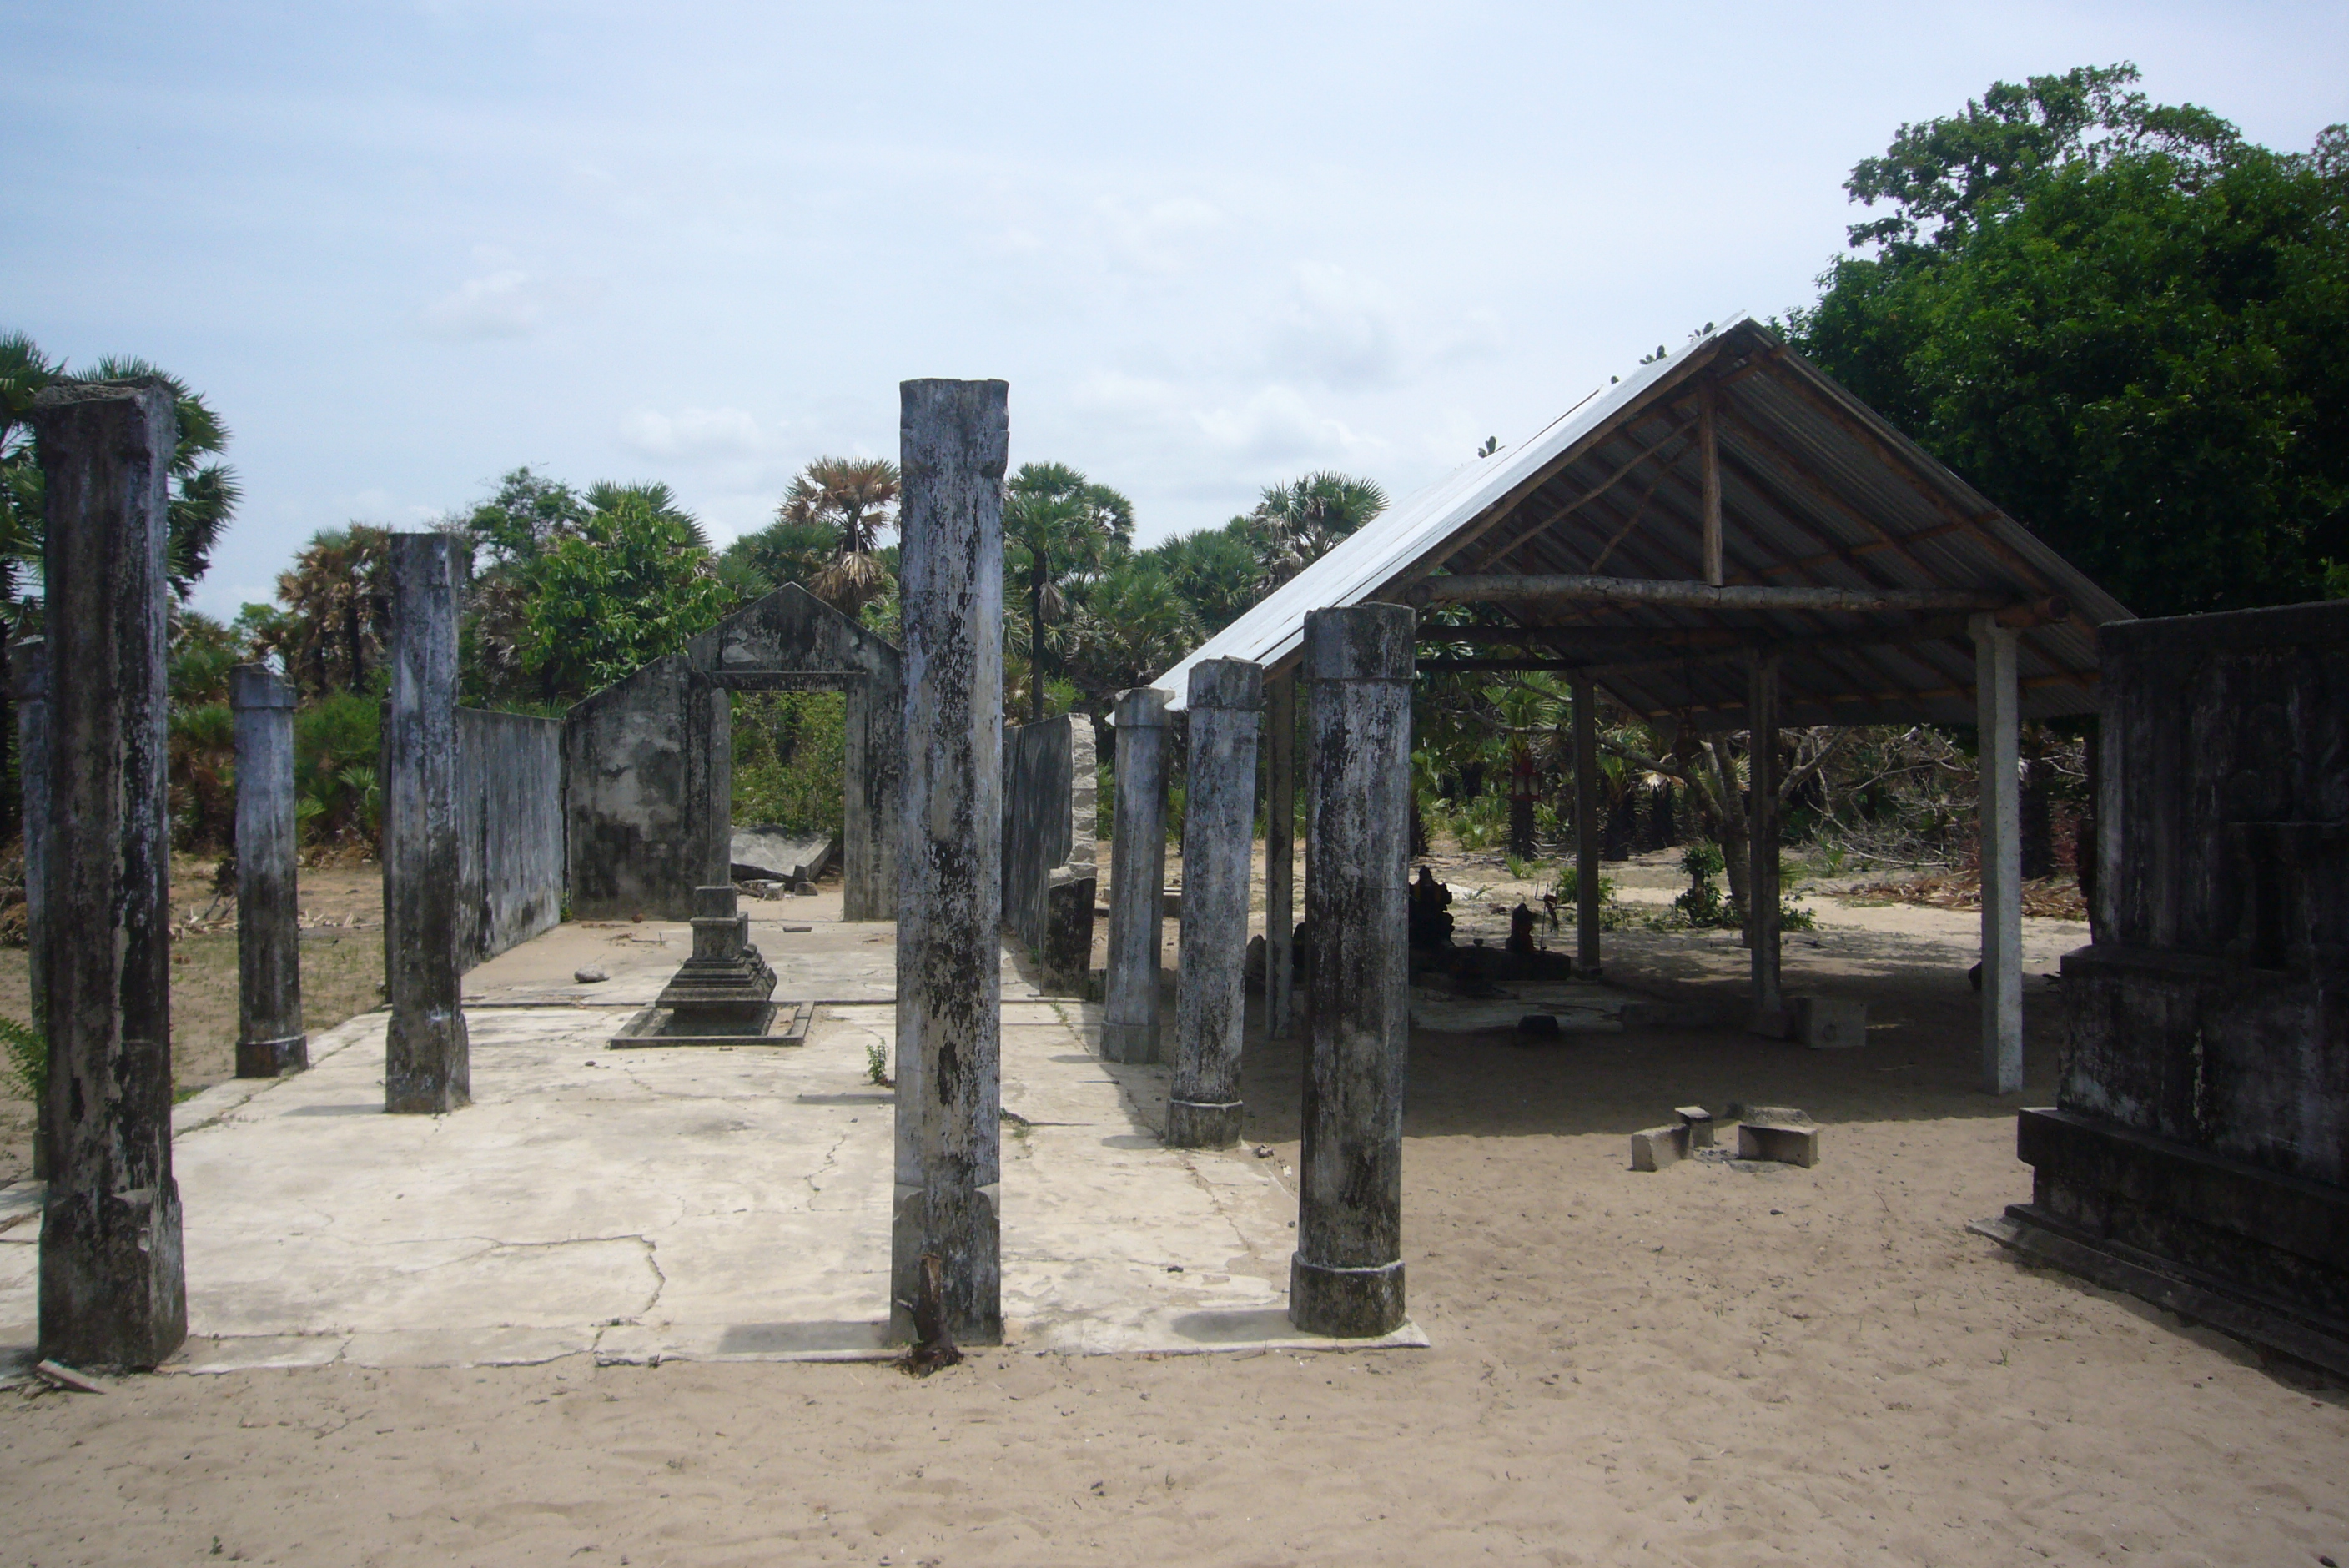 柱だけ残る旧寺院に隣接して立てられたトタン屋根葺きの新寺院